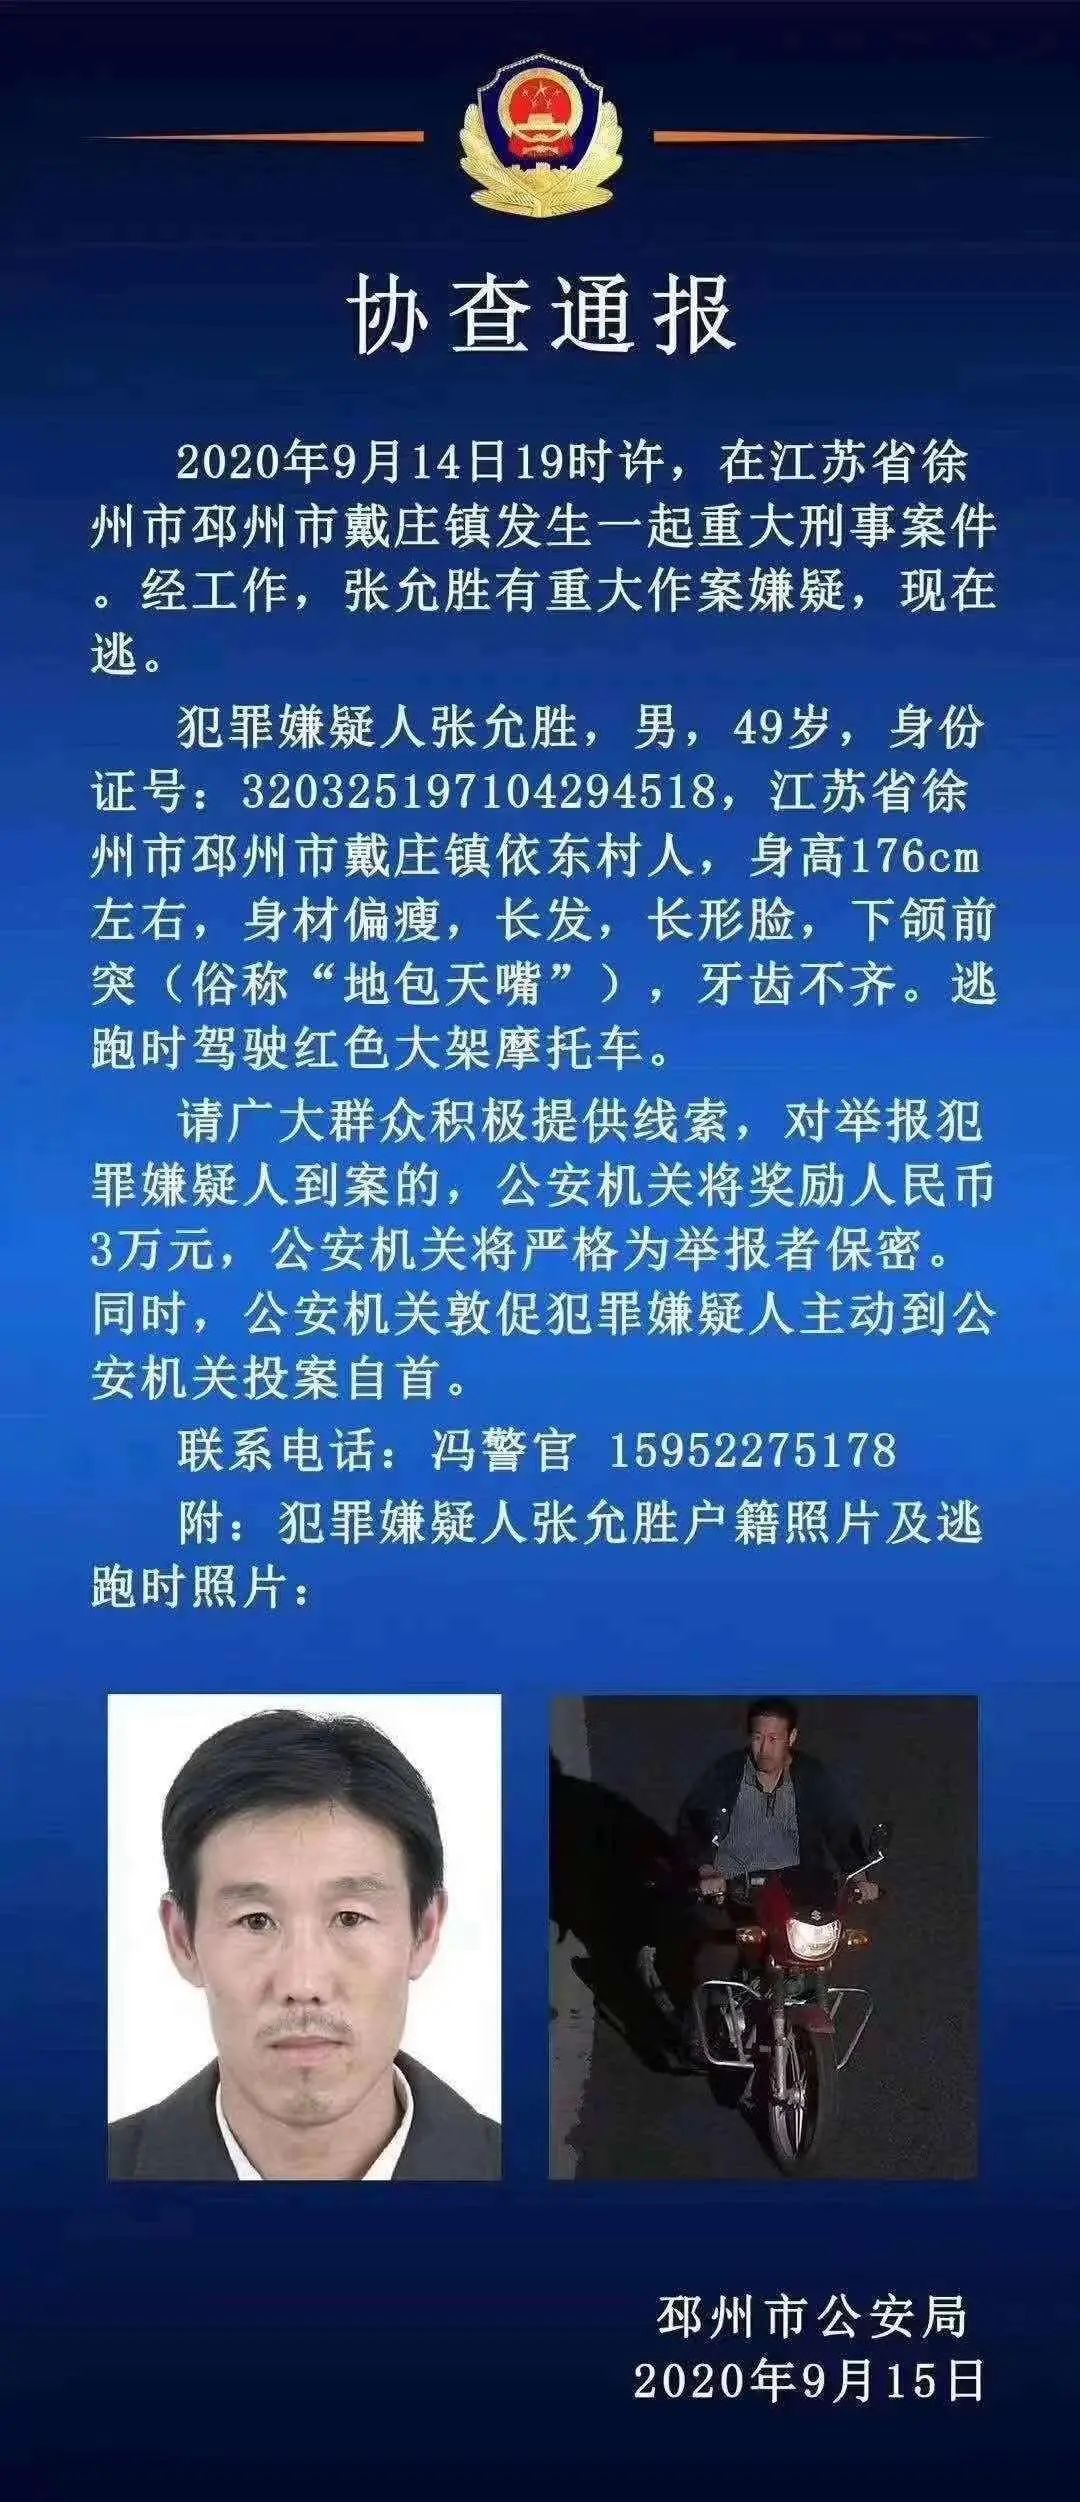 邳州发生一起重大刑事案件警方悬赏3万缉捕嫌疑人